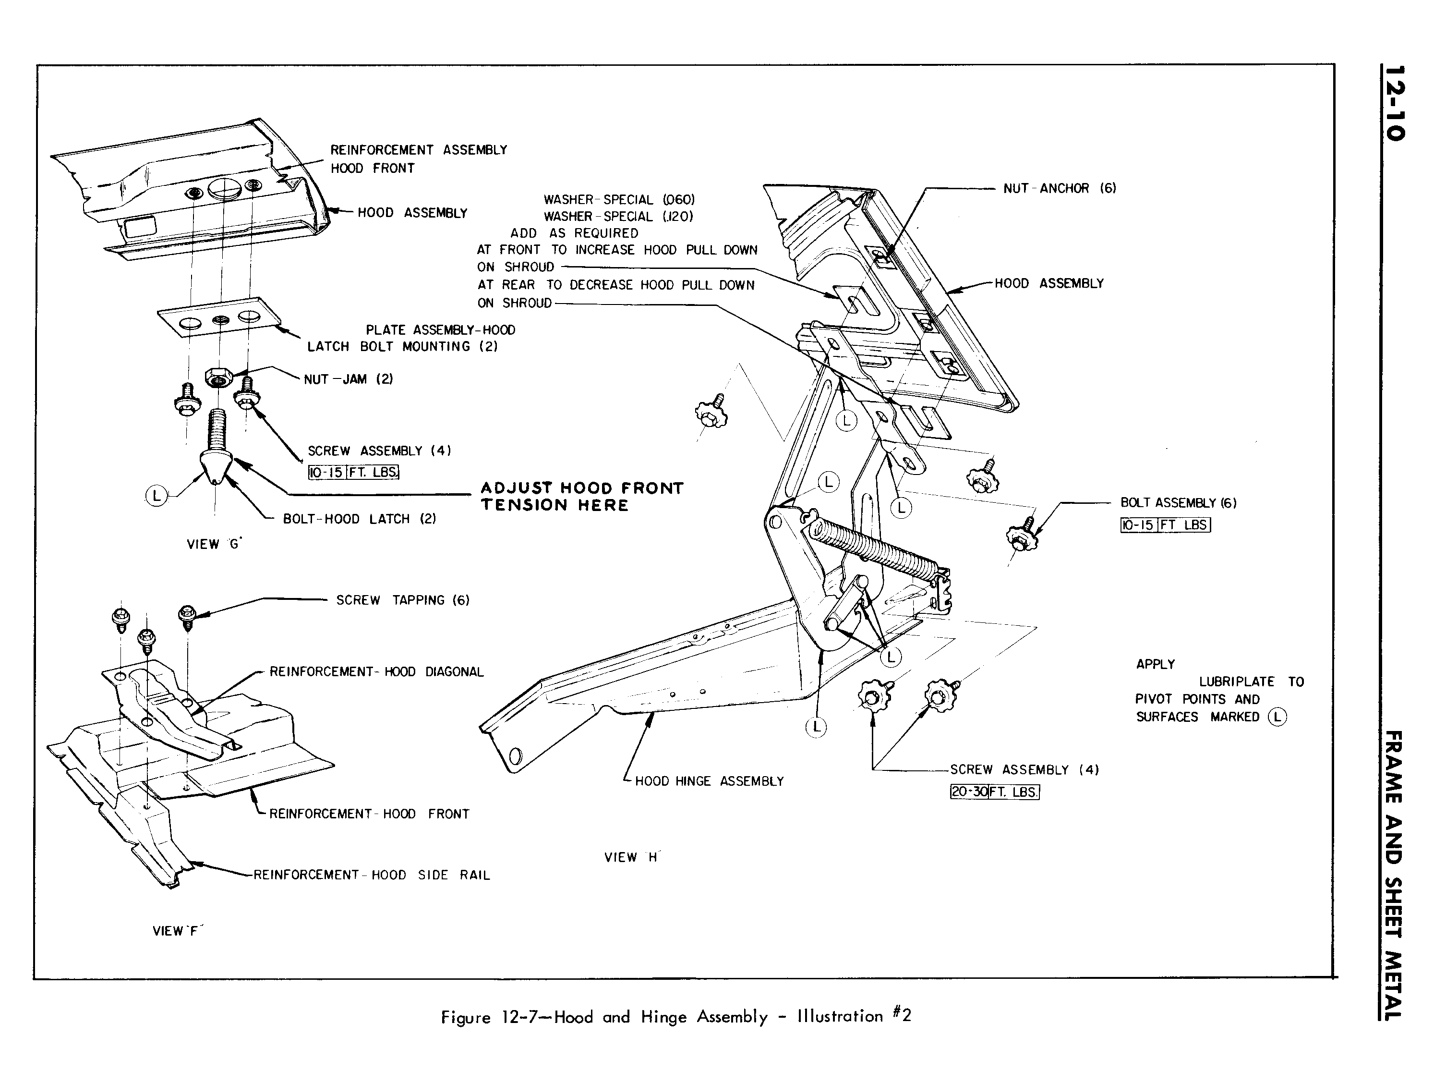 n_12 1961 Buick Shop Manual - Frame & Sheet Metal-010-010.jpg